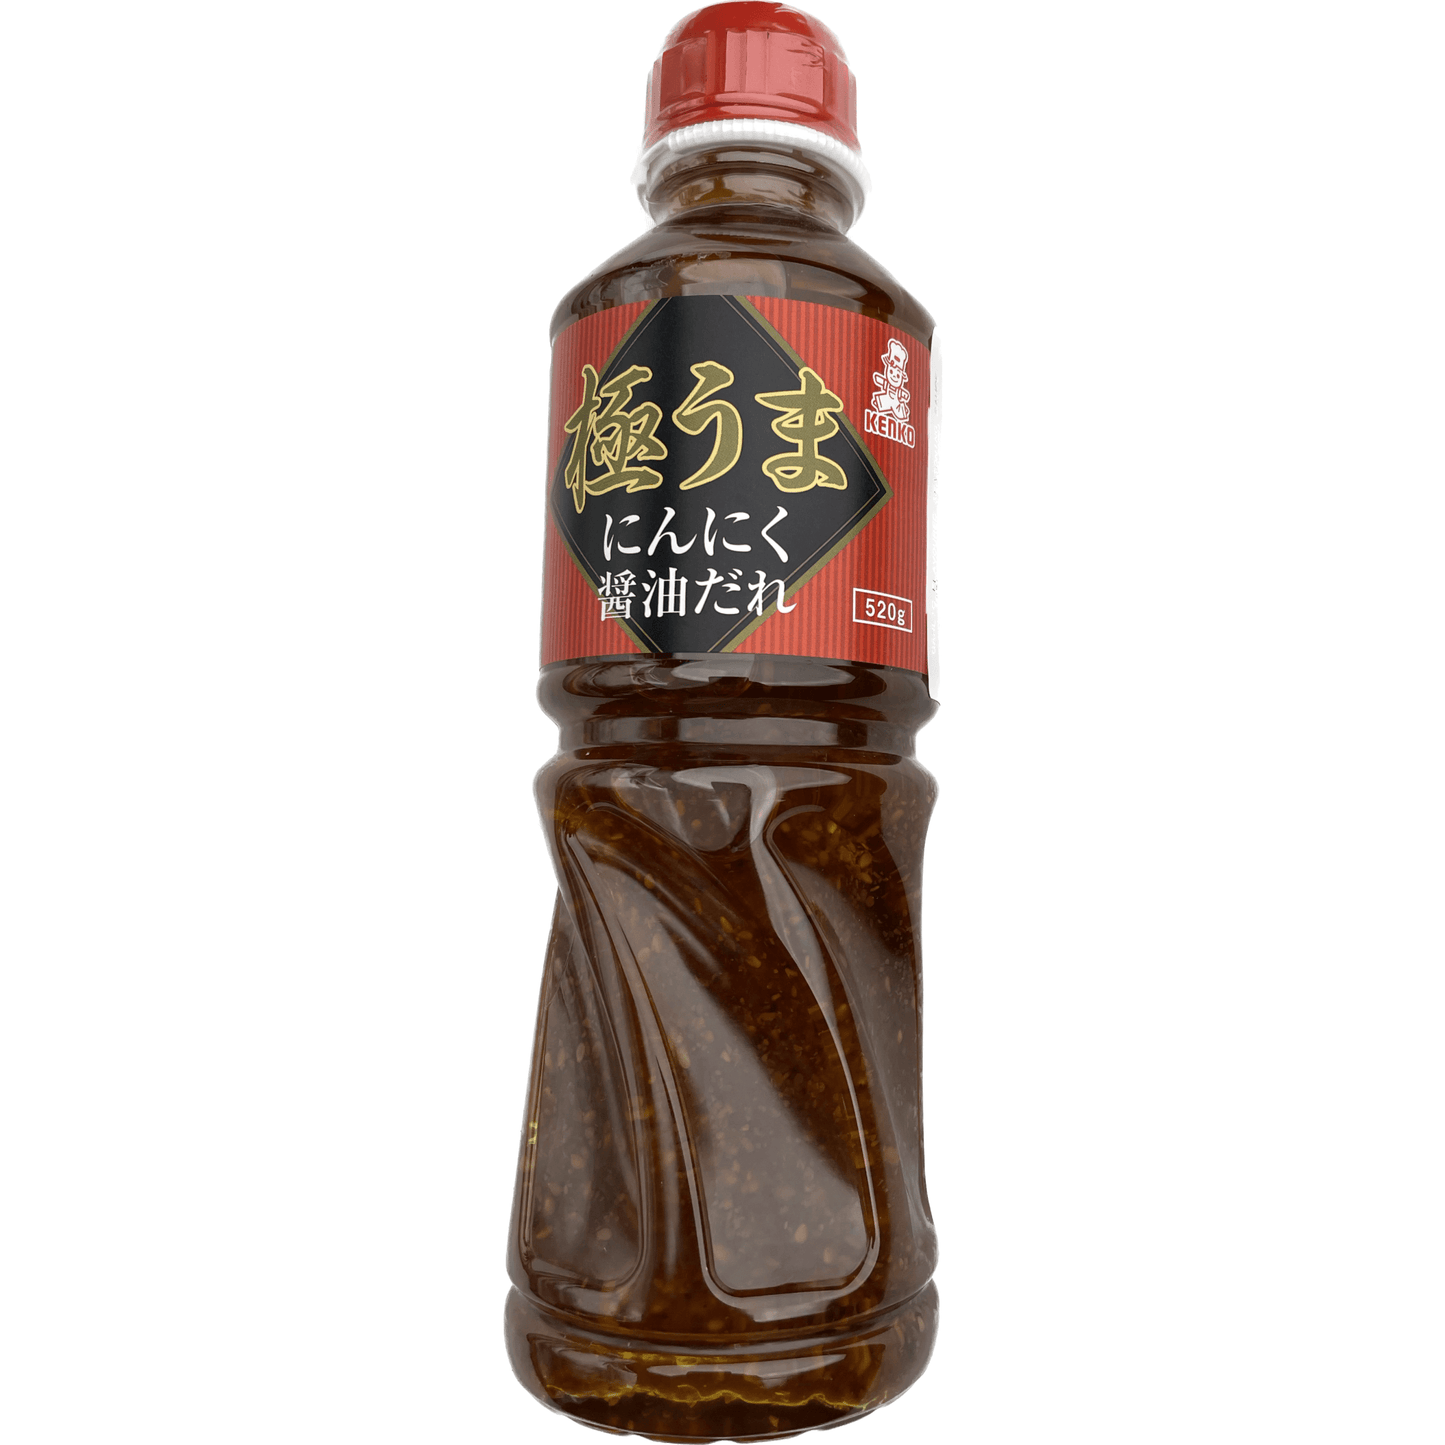 Kenko BBQ Sauce Garlic Soy Sauce 520g /　ケンコー　極うまにんにく醤油だれ　520g - RiceWineShop